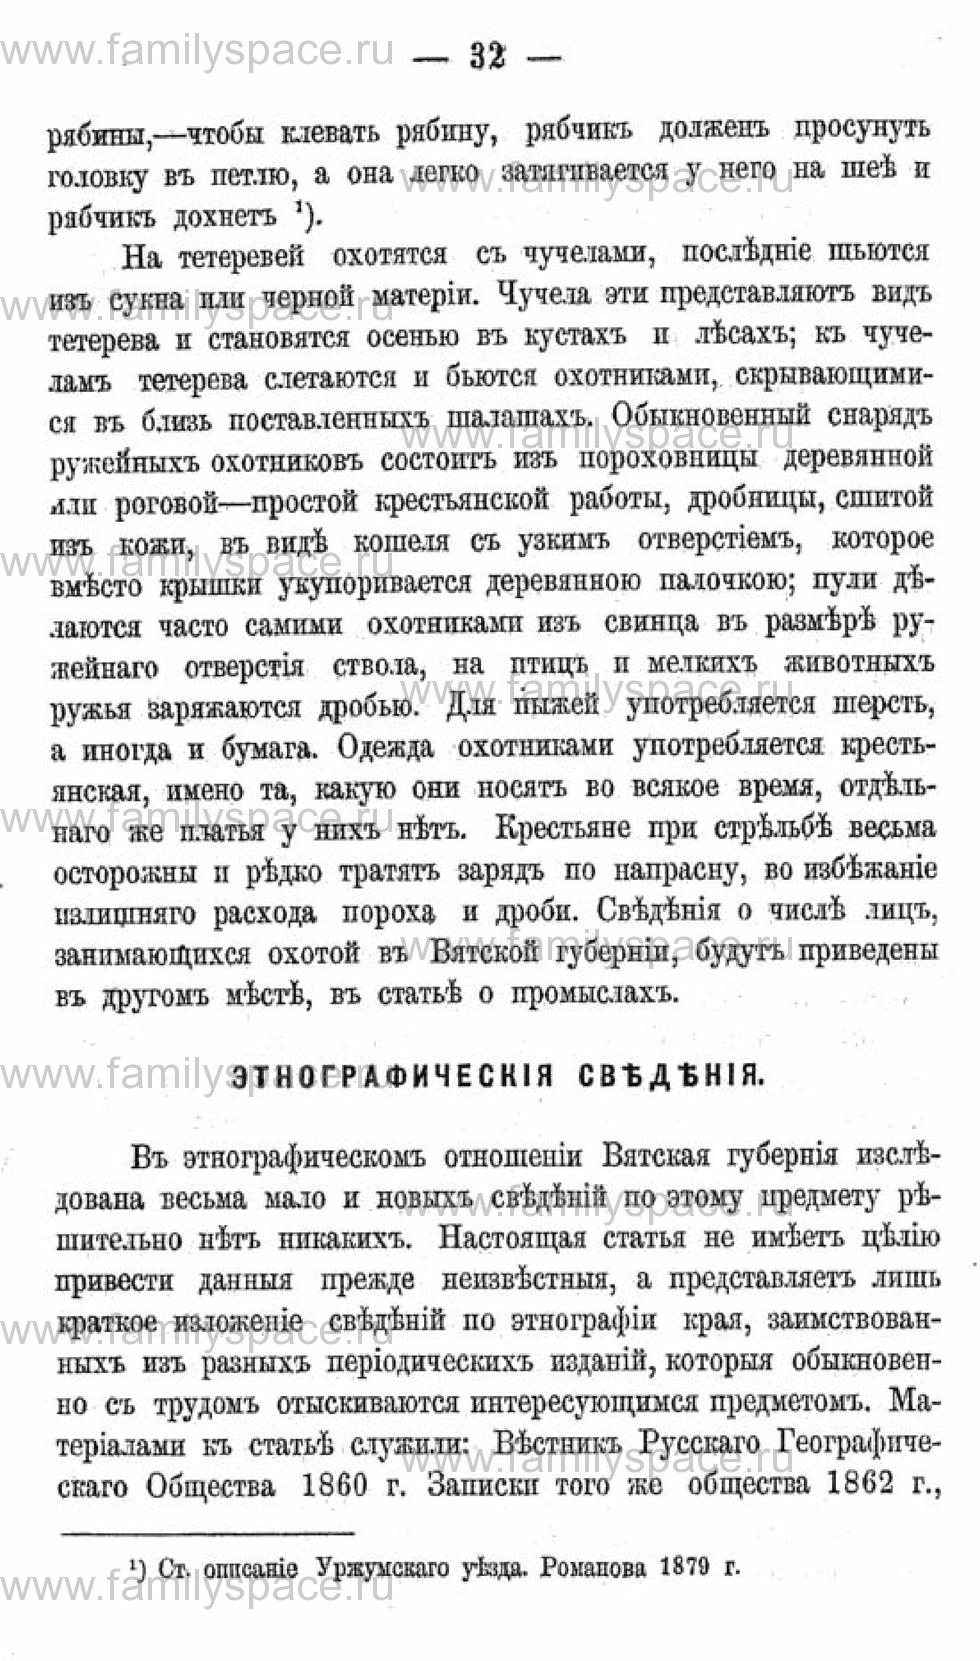 Поиск по фамилии - Календарь Вятской губернии - 1880, страница 2032